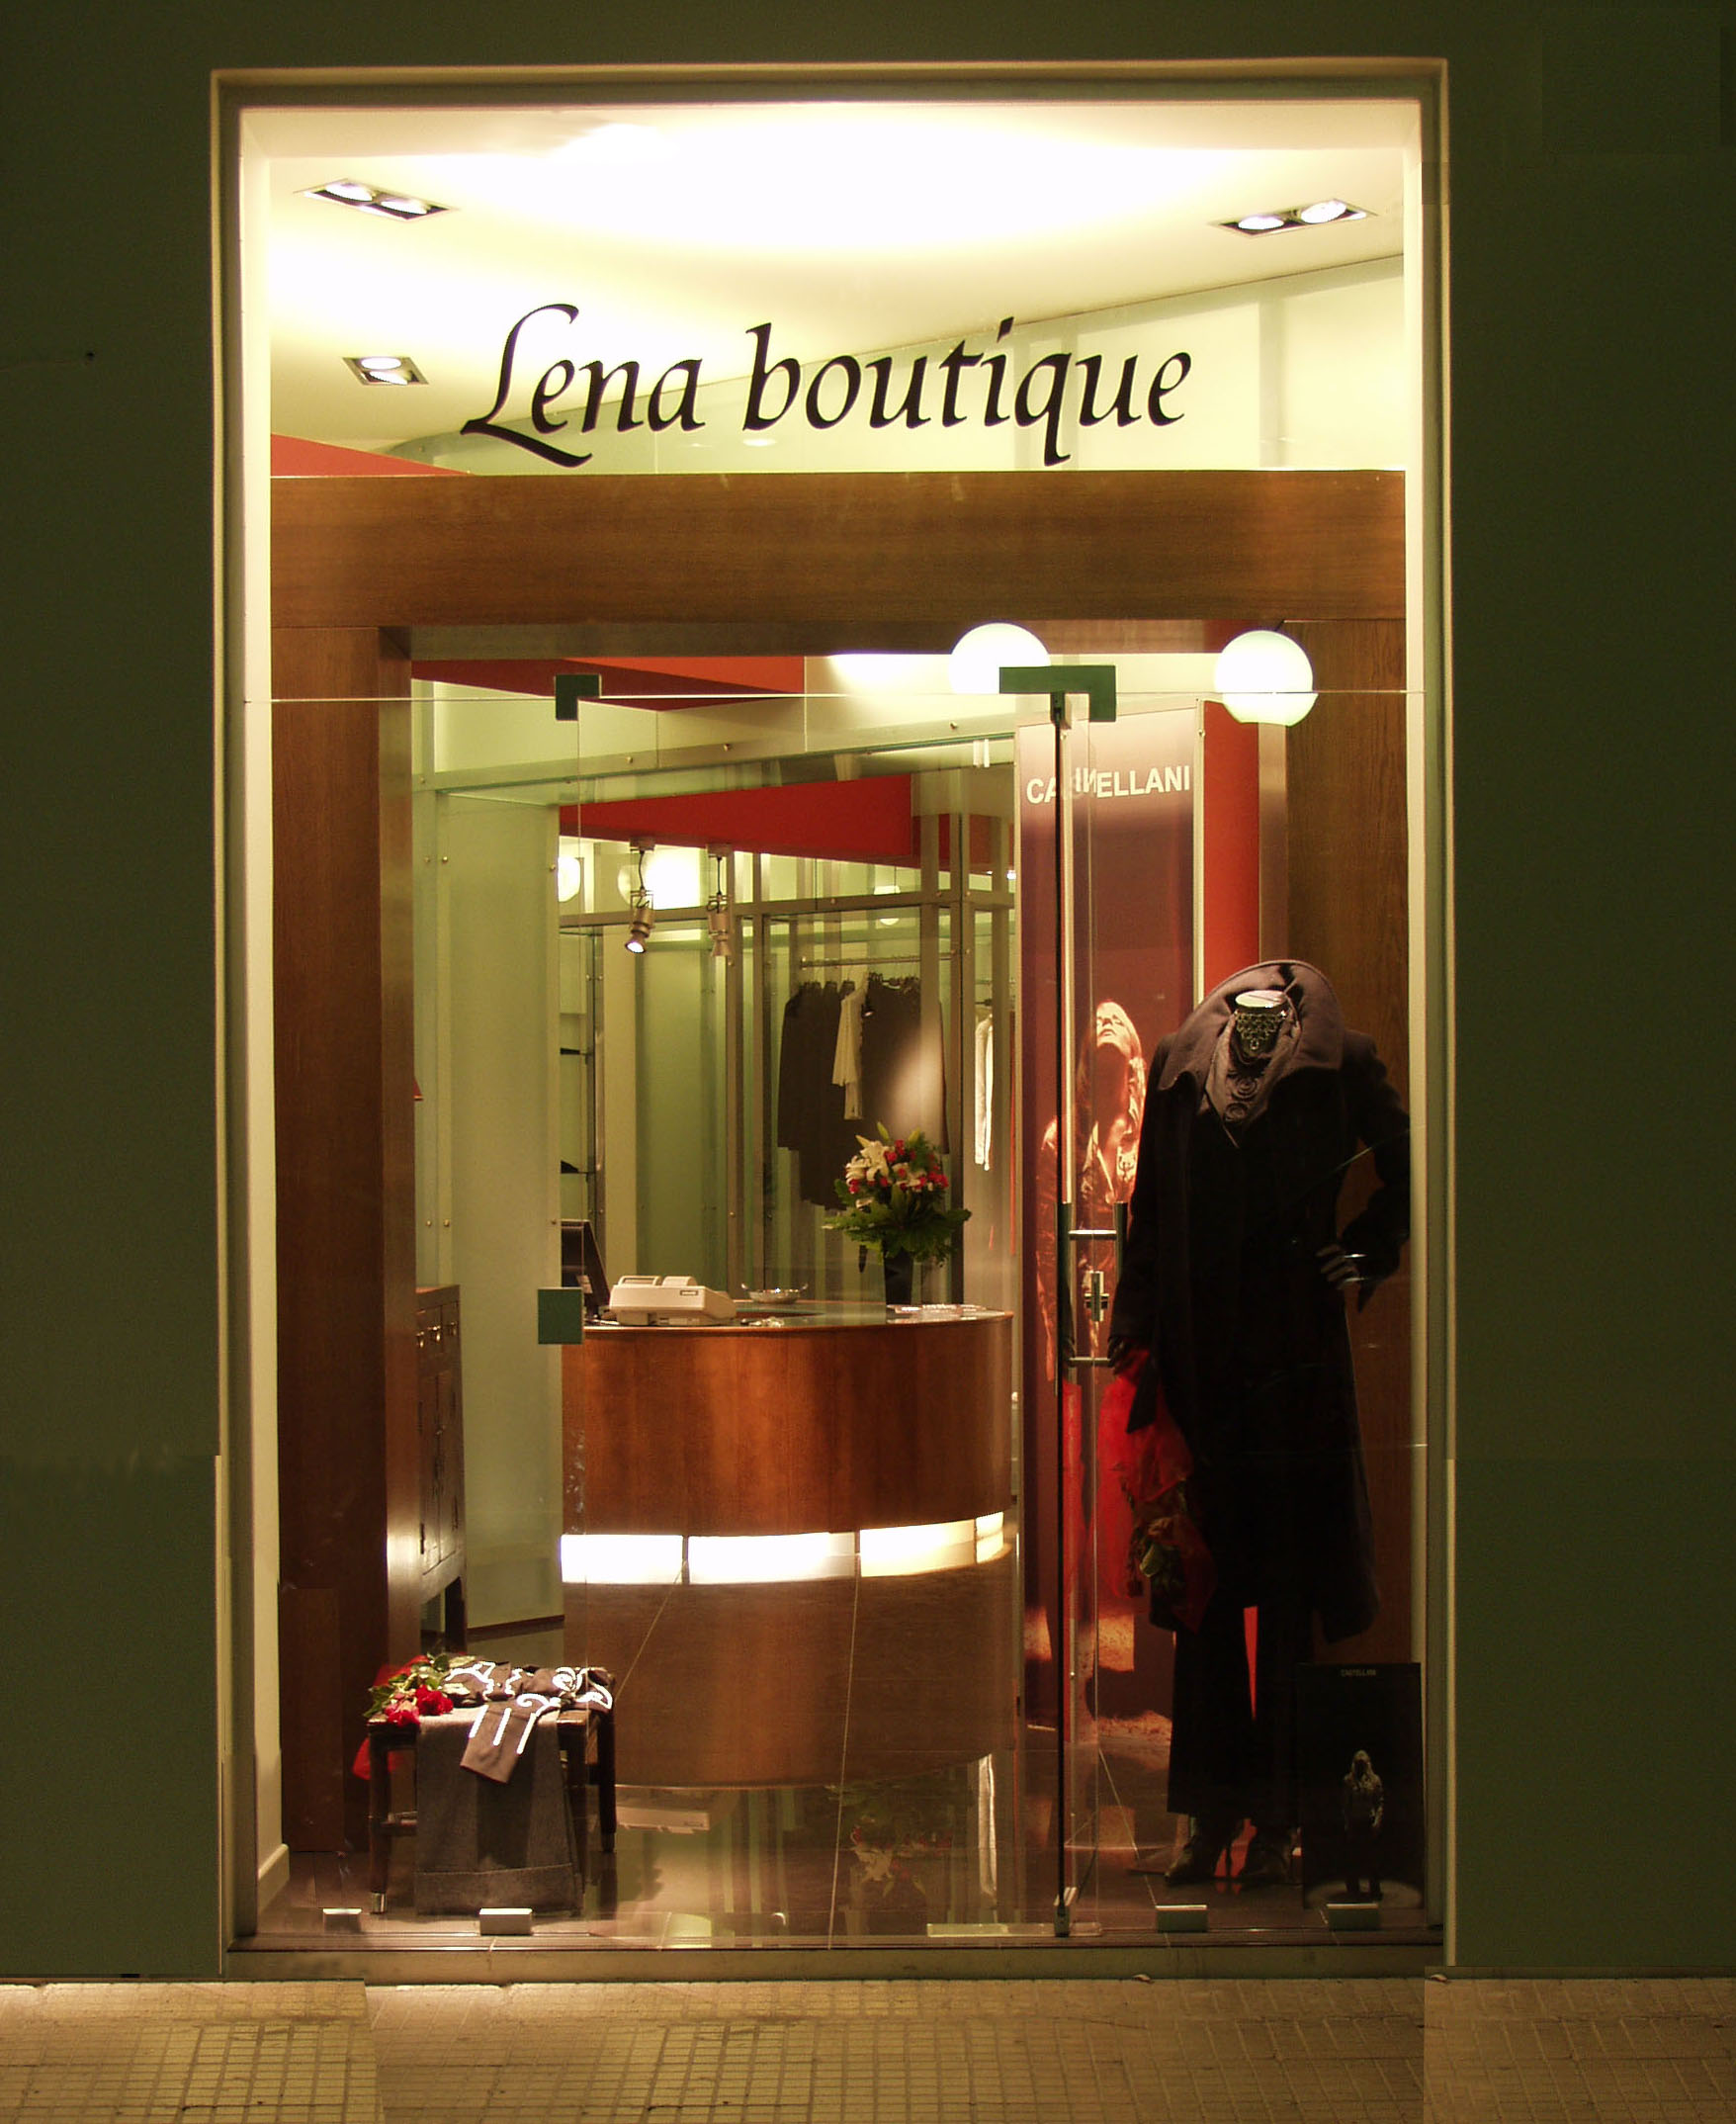 Lena boutique